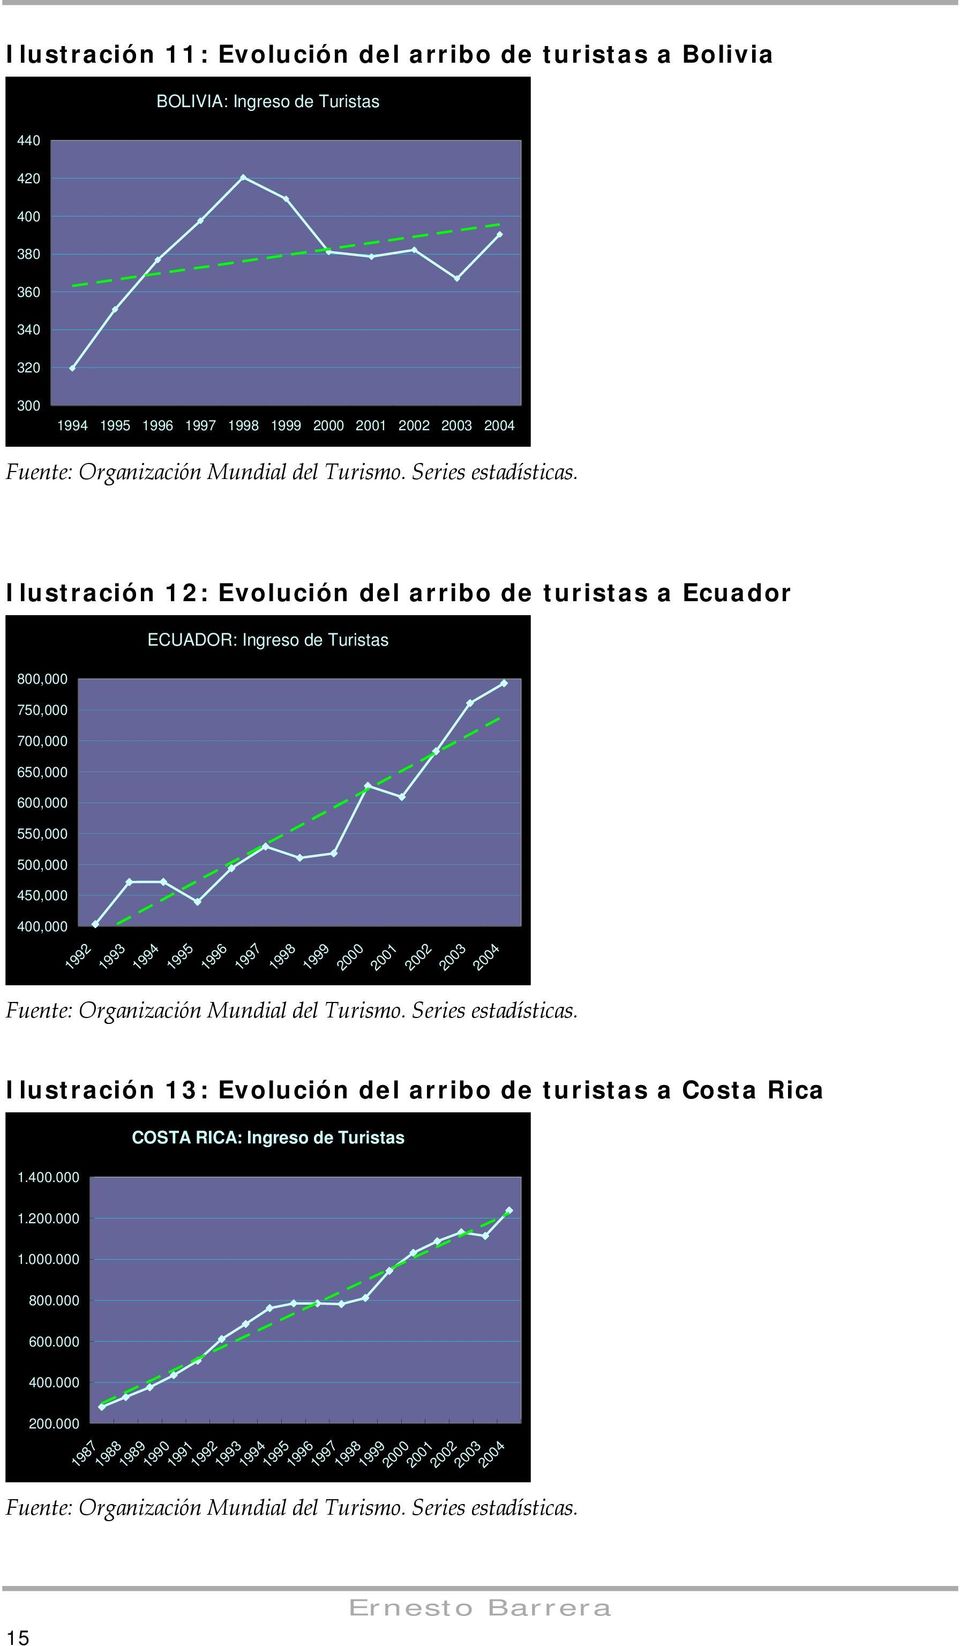 Ilustración 12: Evolución del arribo de turistas a Ecuador 800,000 750,000 700,000 650,000 600,000 550,000 500,000 450,000 400,000 ECUADOR: Ingreso de Turistas 1992 1993 1994 1995 1996 1997 1998 1999